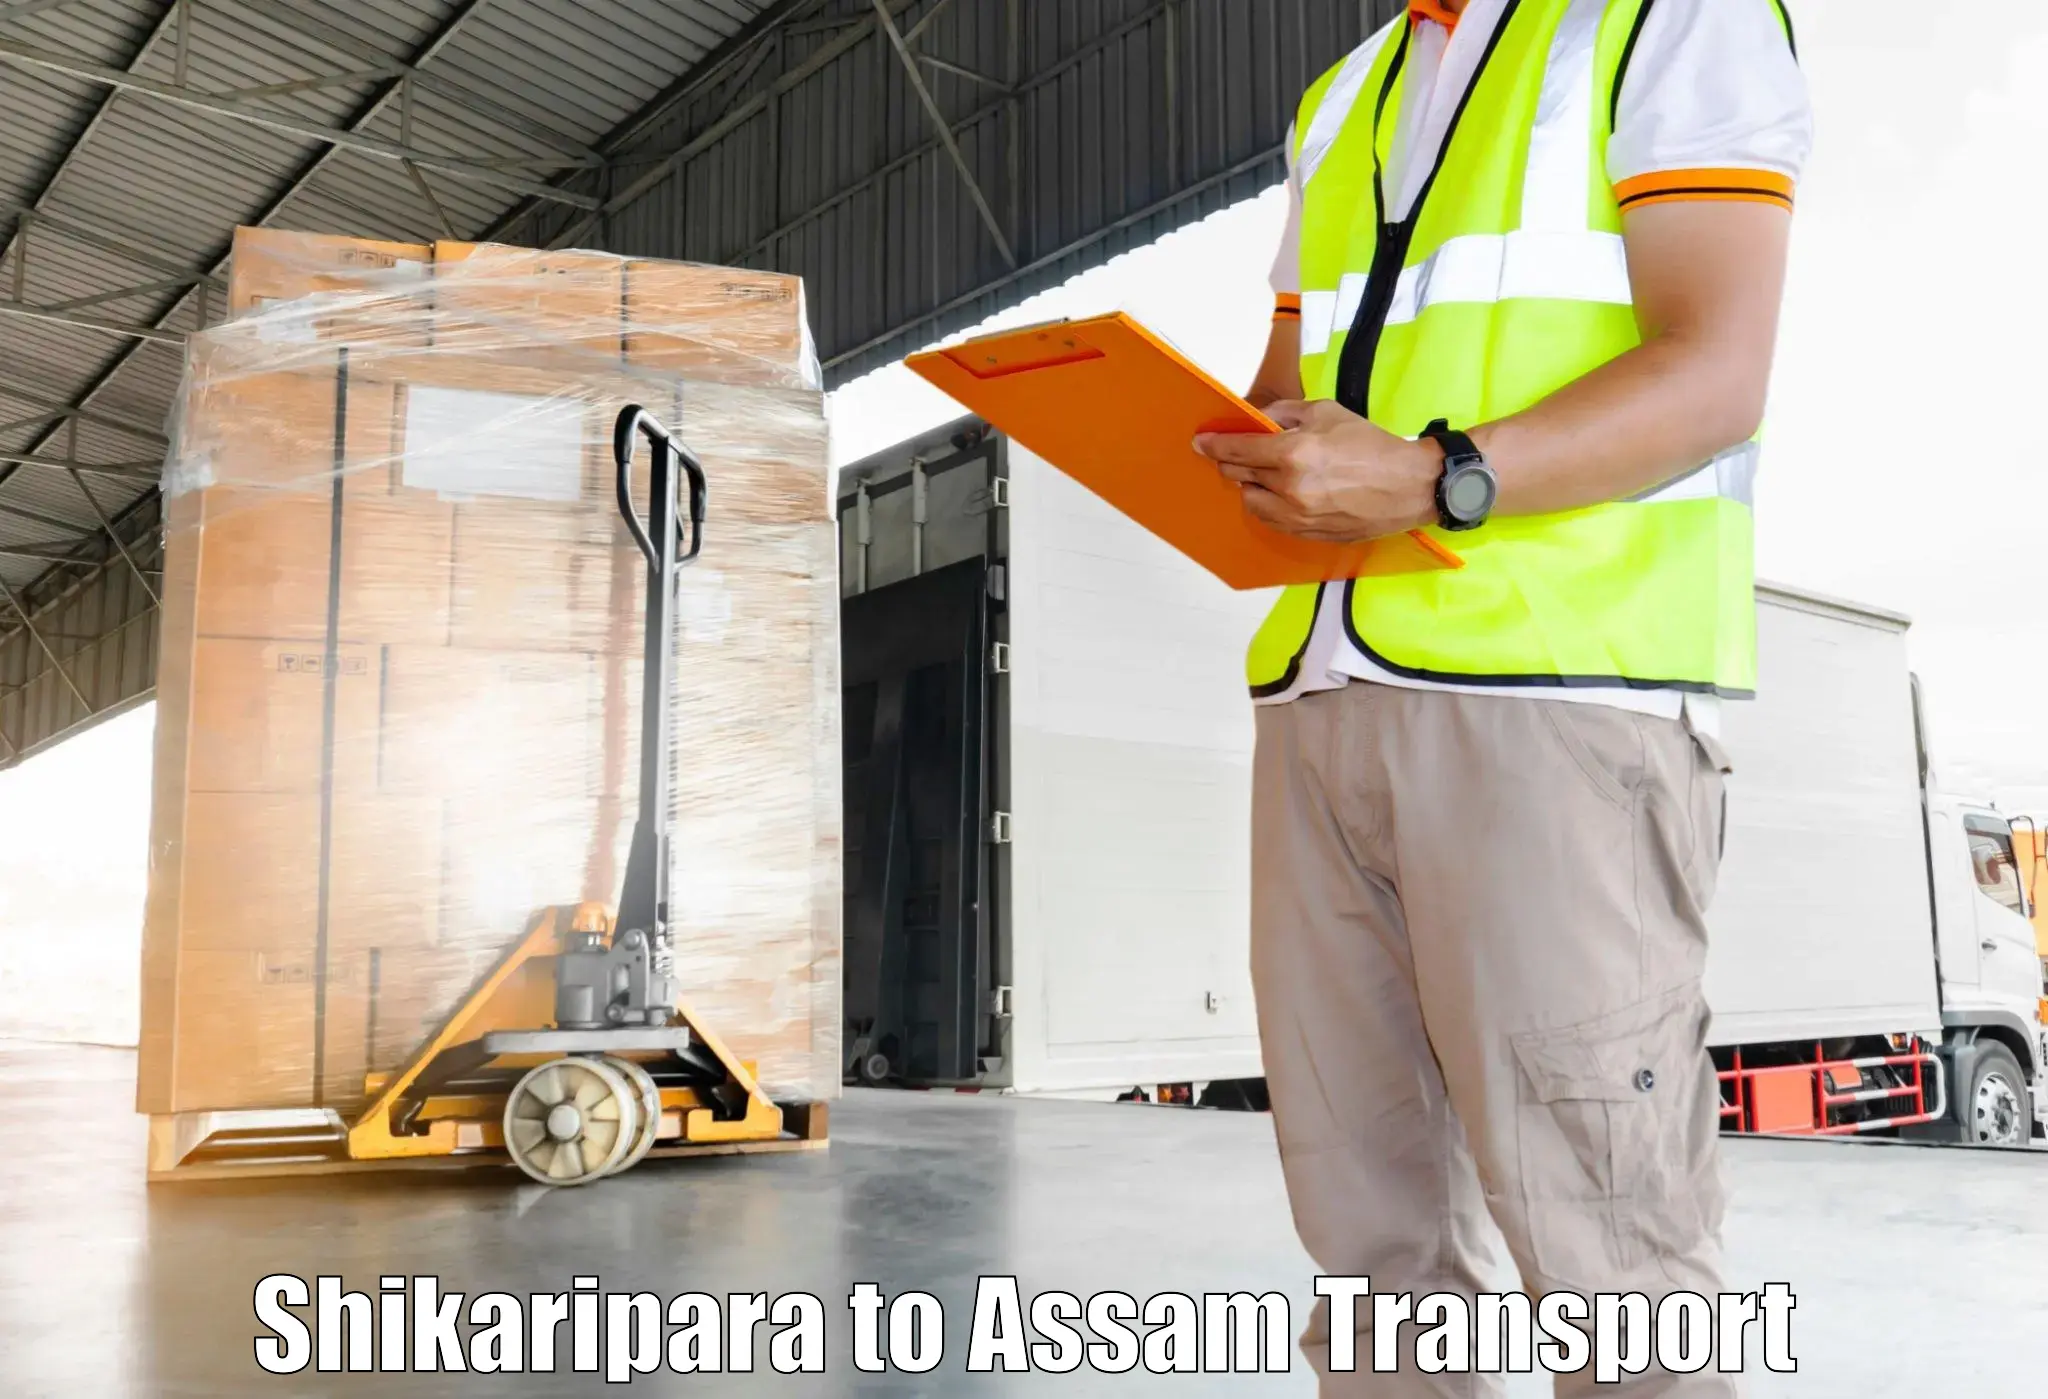 Transport in sharing Shikaripara to Goalpara